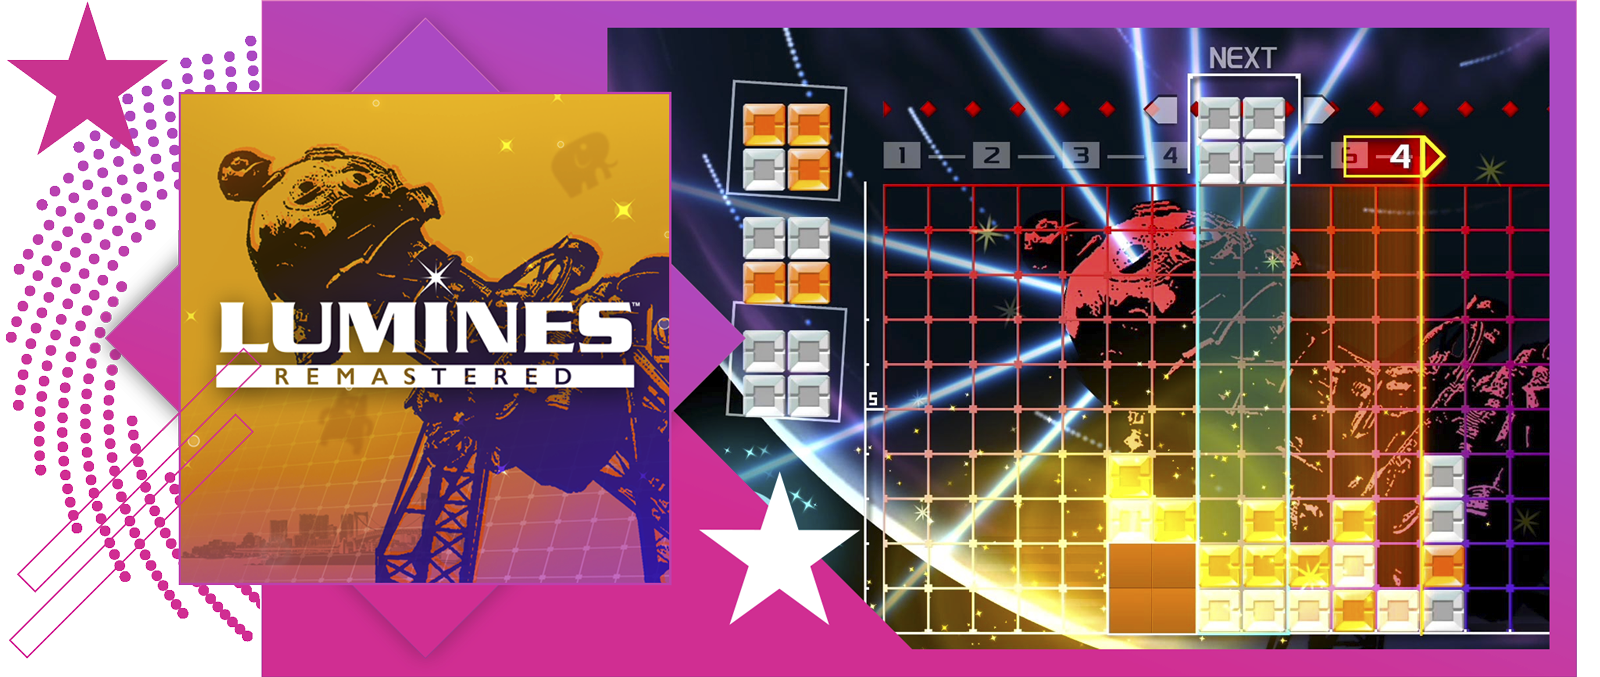 Obraz artykuły najlepszych gier rytmicznych, z grafiką główną i rozgrywką z Lumines Remastered.